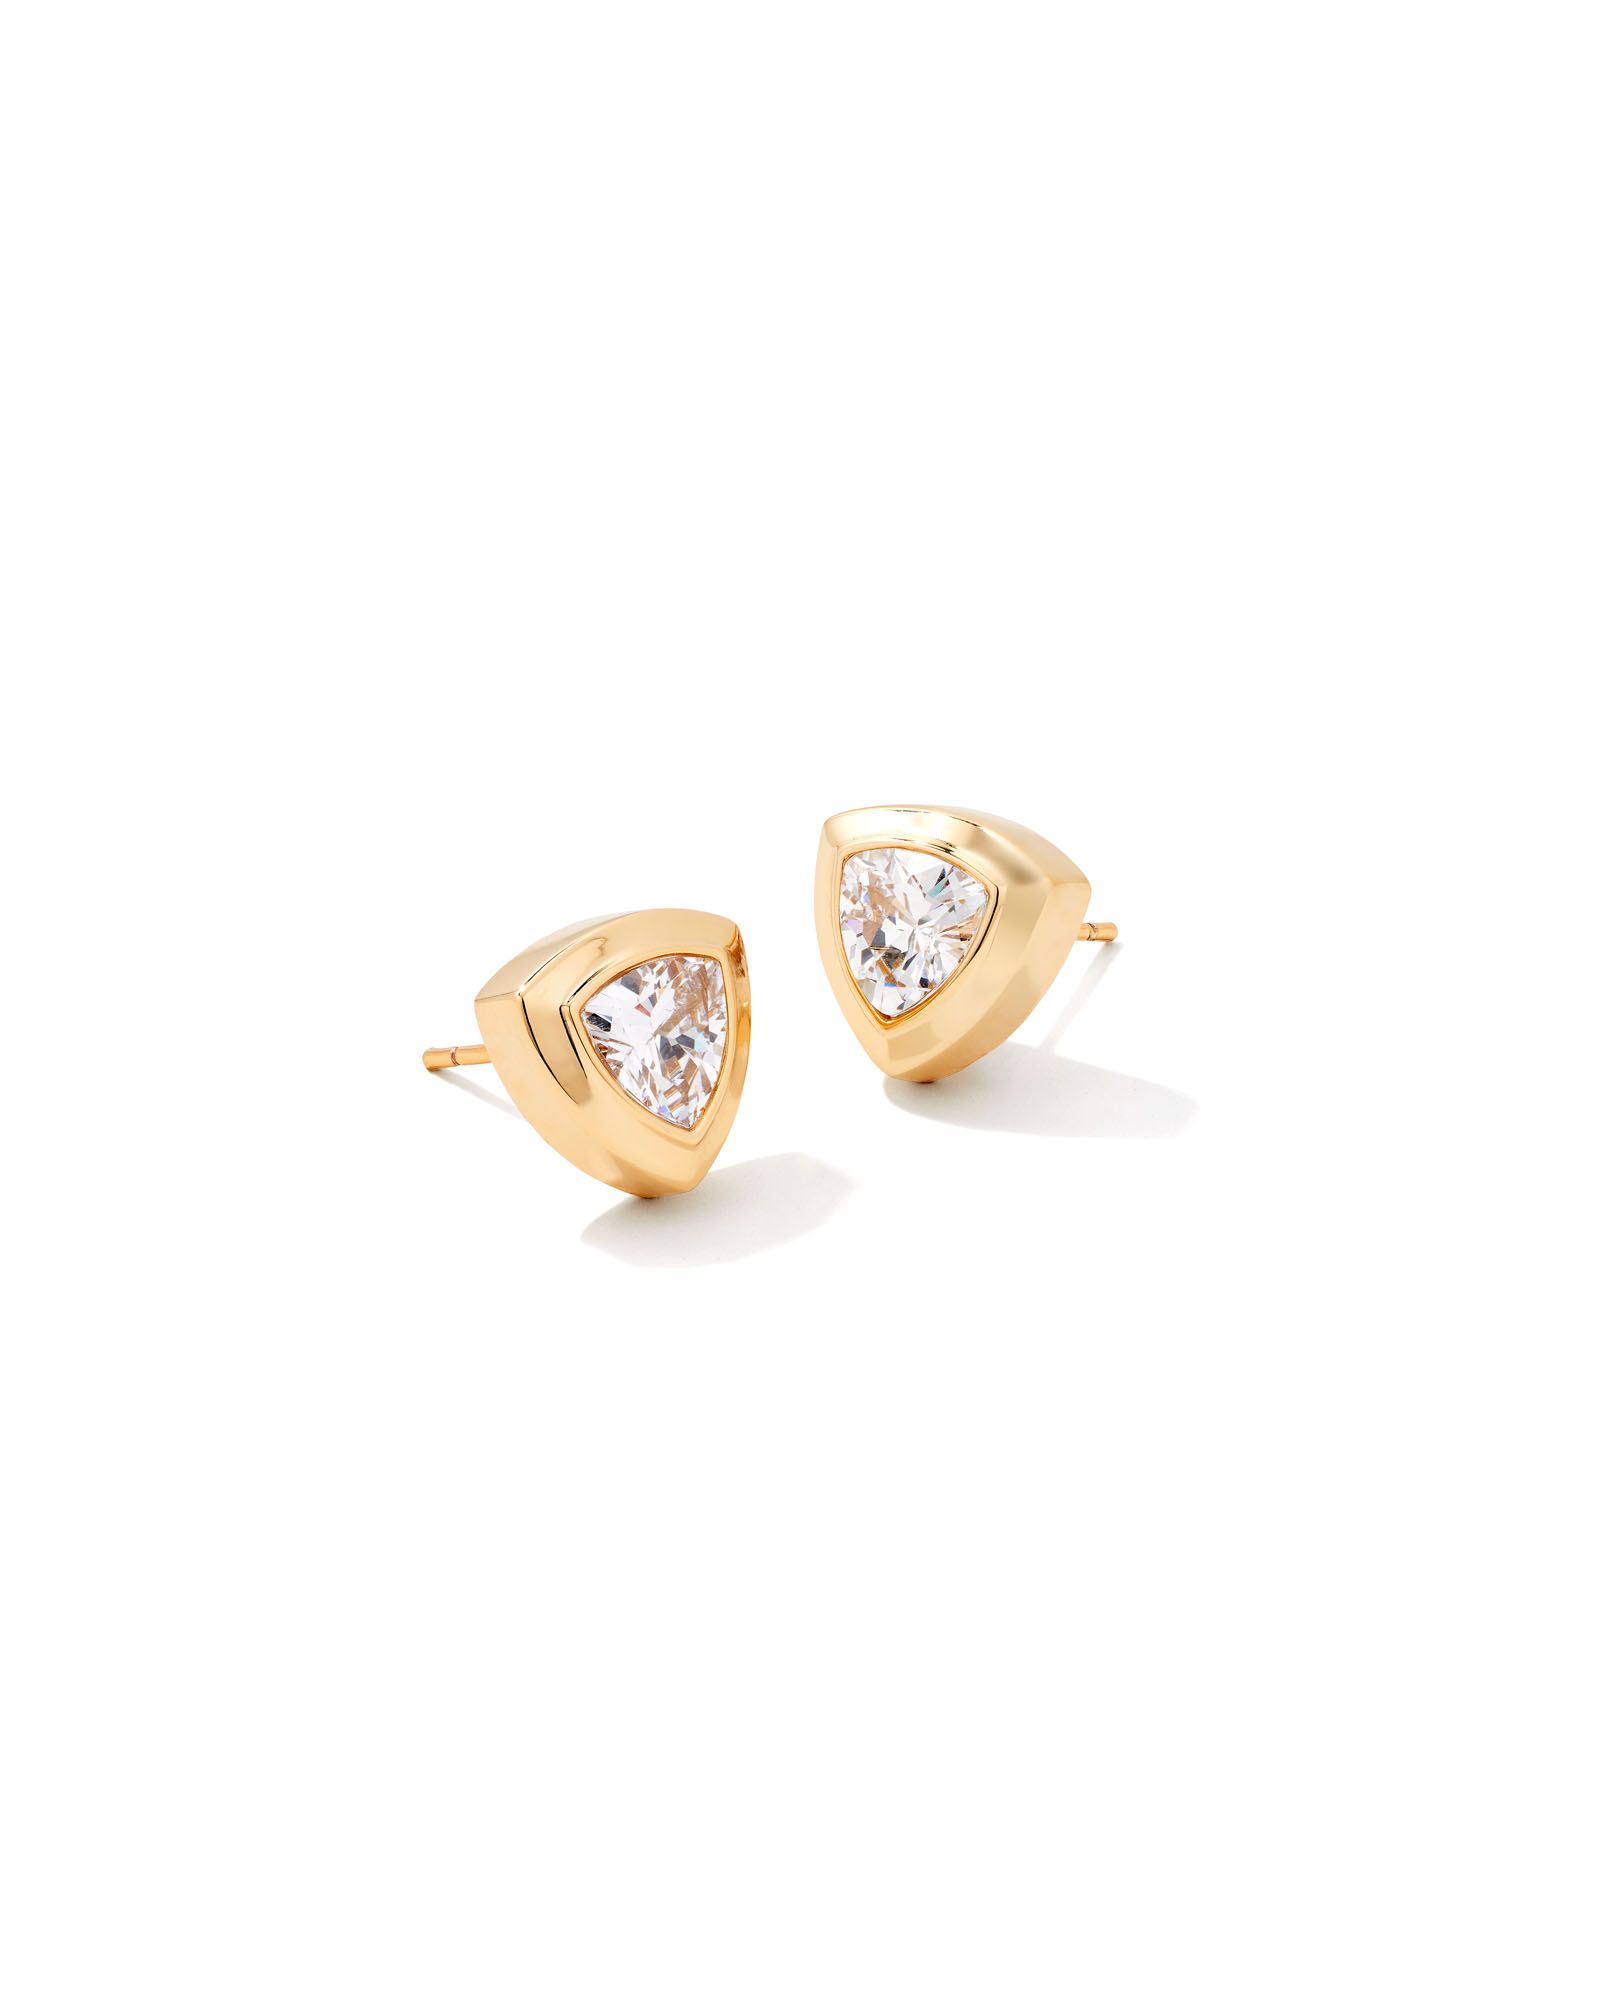 Arden Gold Stud Earrings in White Crystal | Kendra Scott